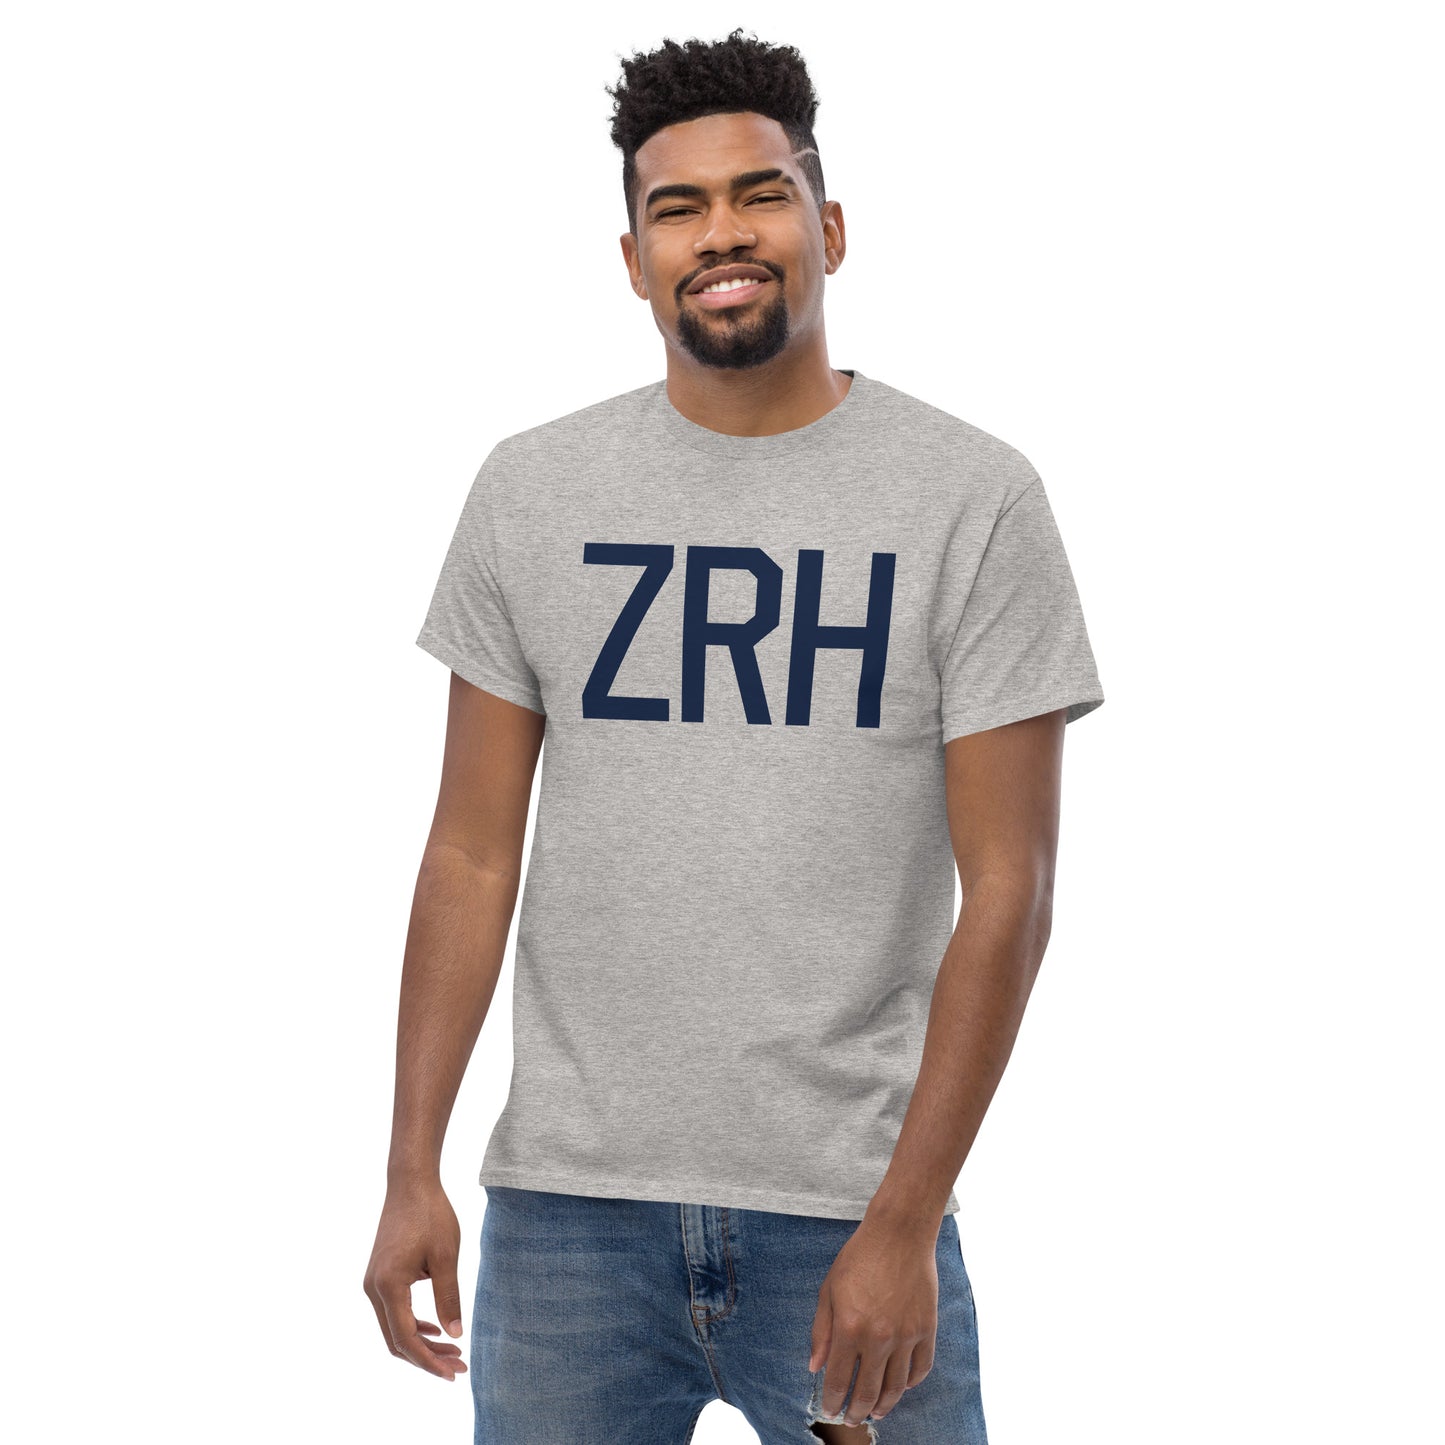 Aviation-Theme Men's T-Shirt - Navy Blue Graphic • ZRH Zurich • YHM Designs - Image 06